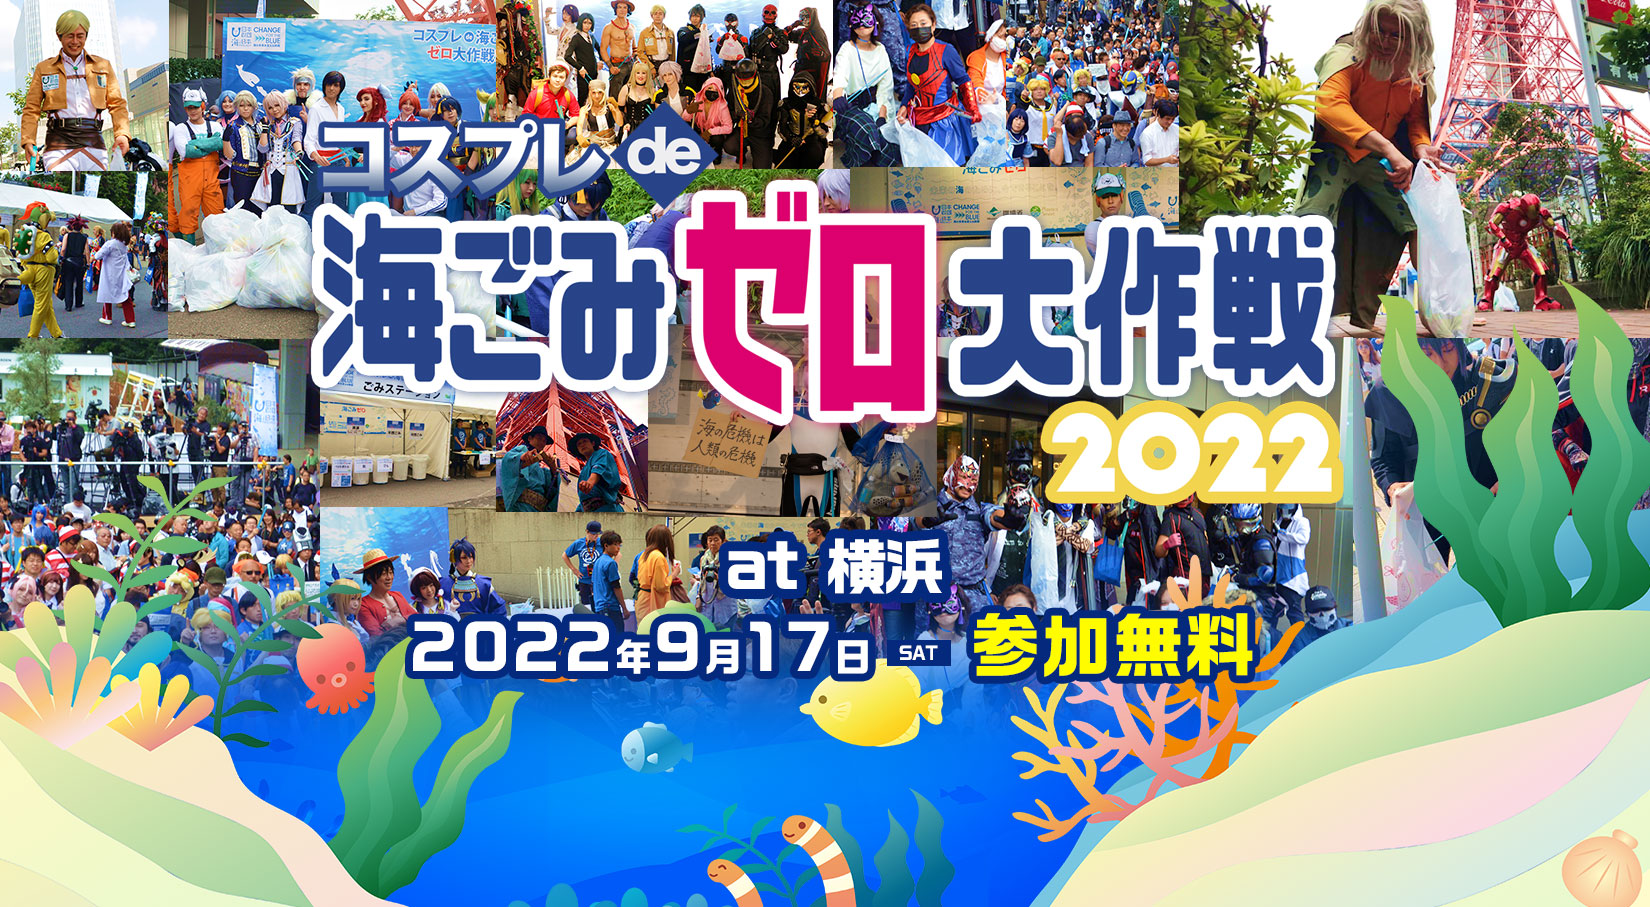 キックオフイベント、「コスプレde海ごみゼロ大作戦」は横浜で開催